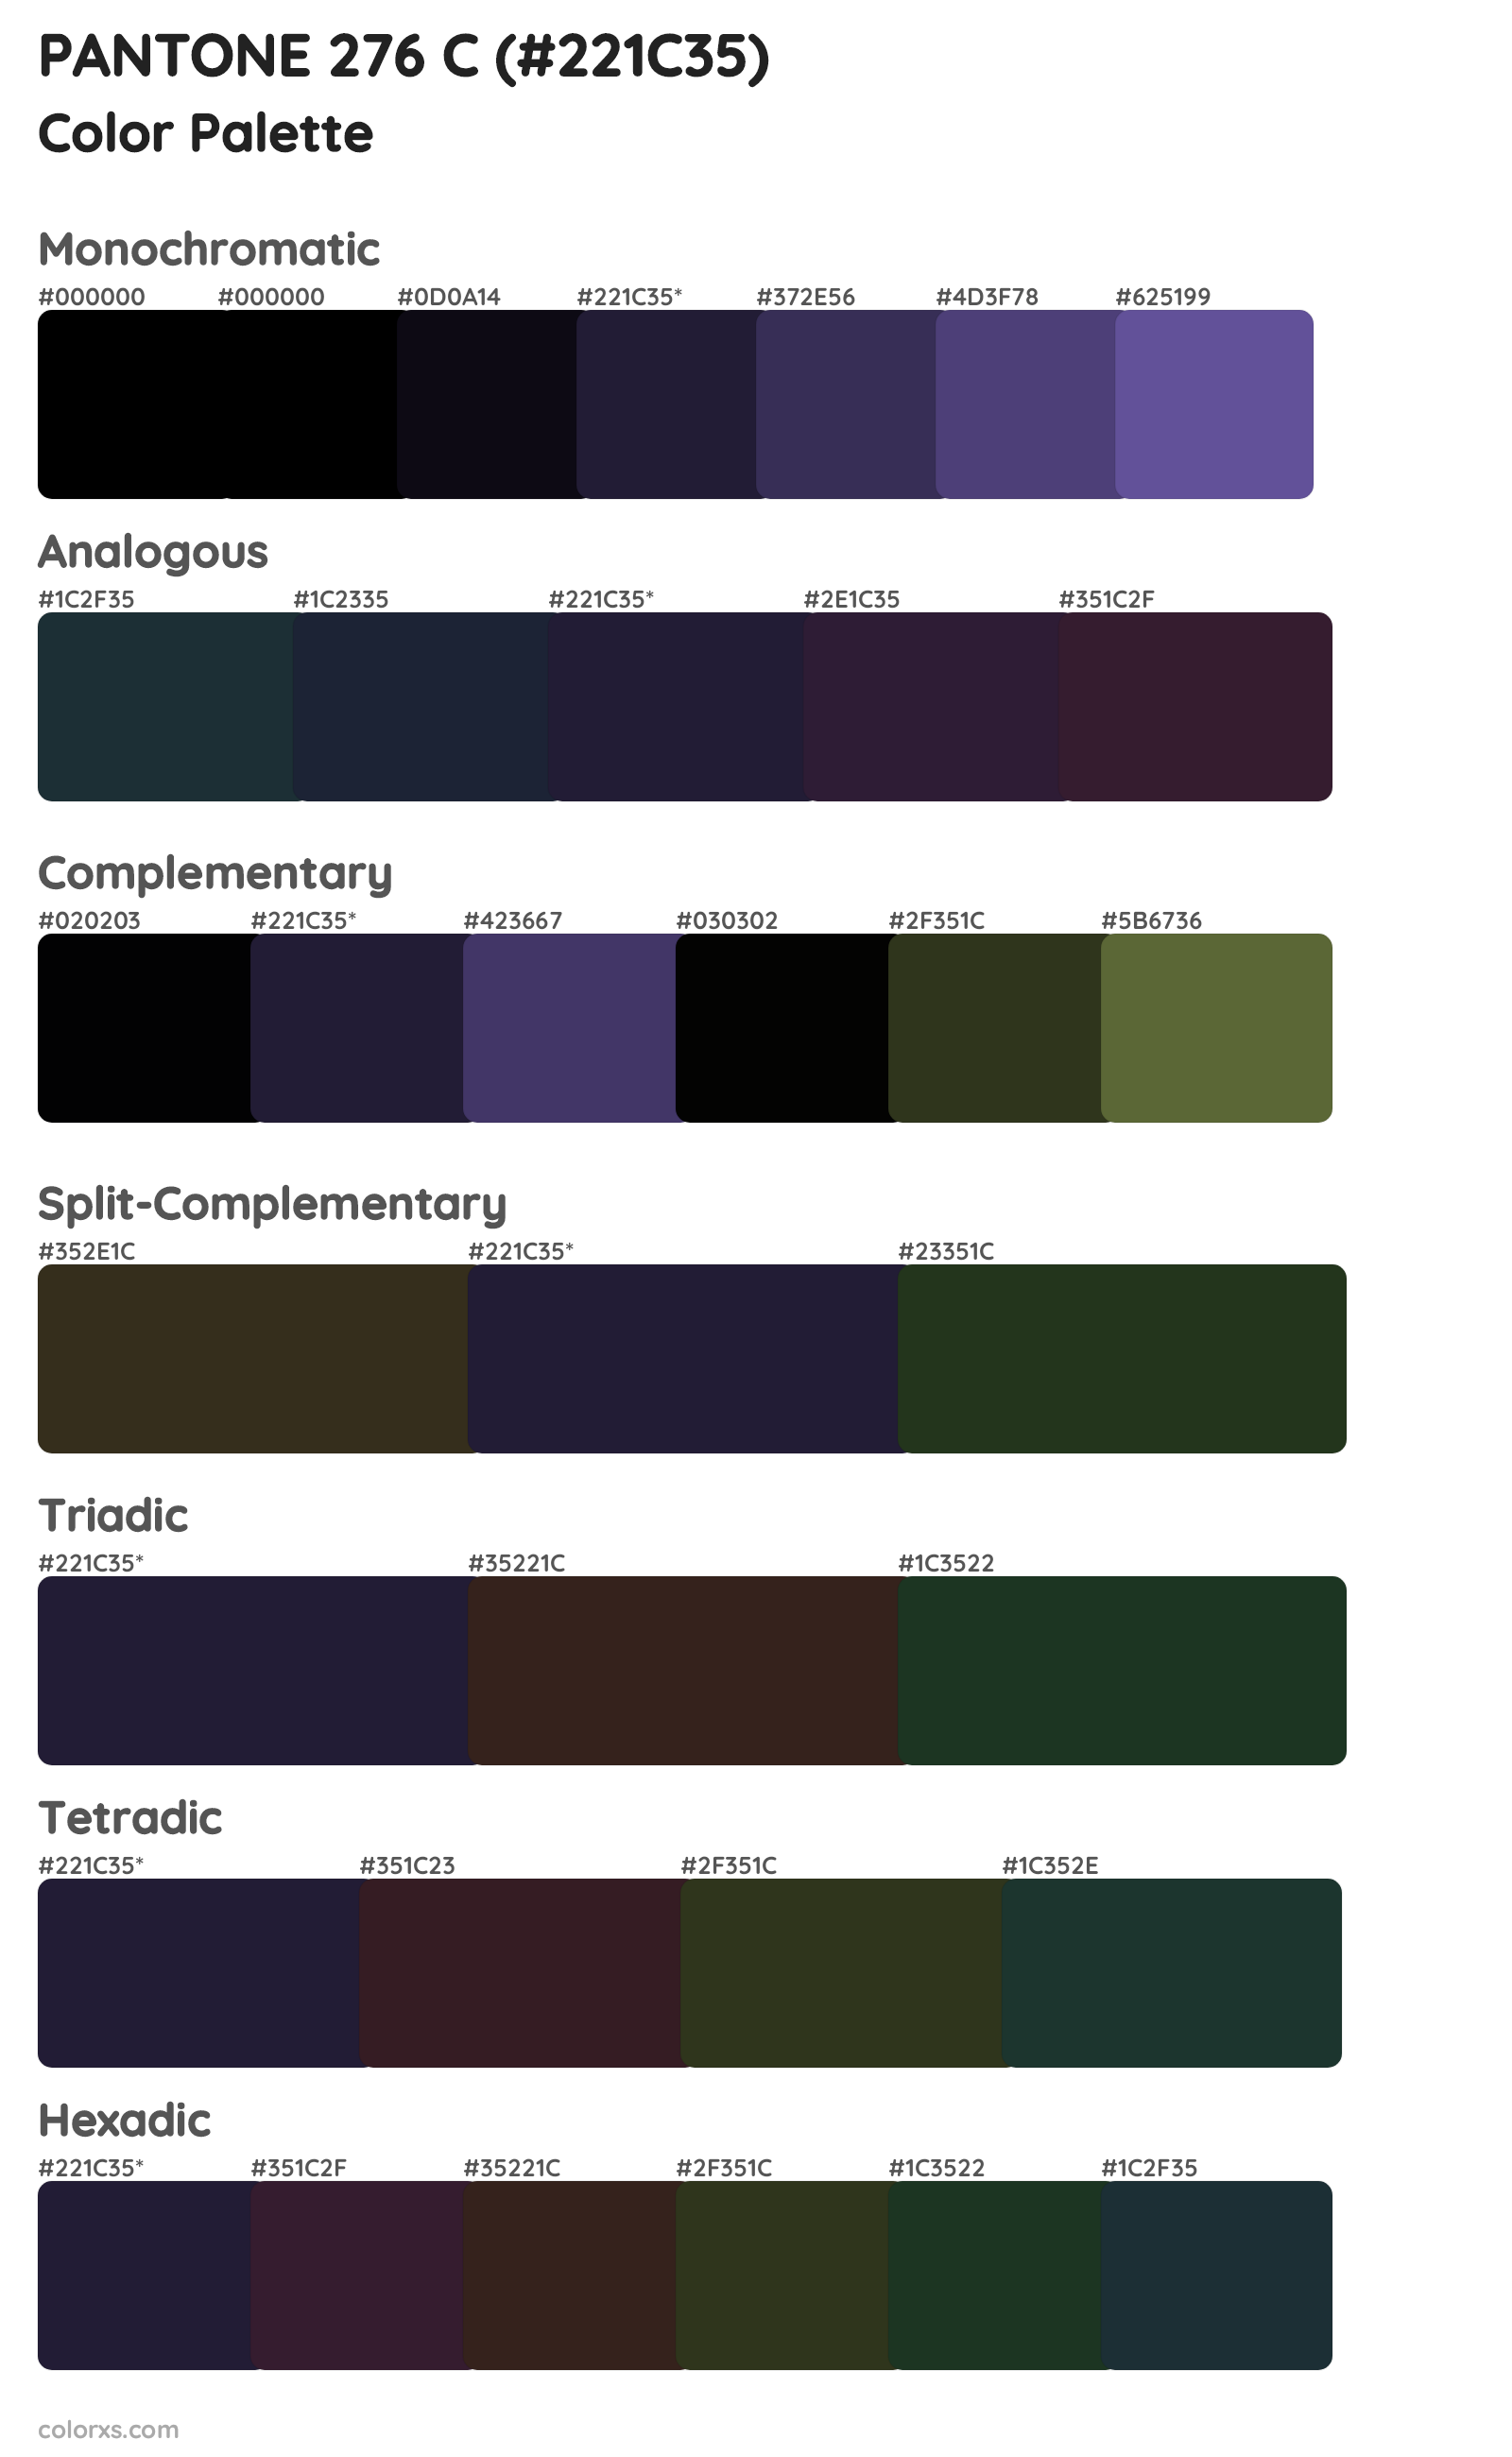 PANTONE 276 C Color Scheme Palettes